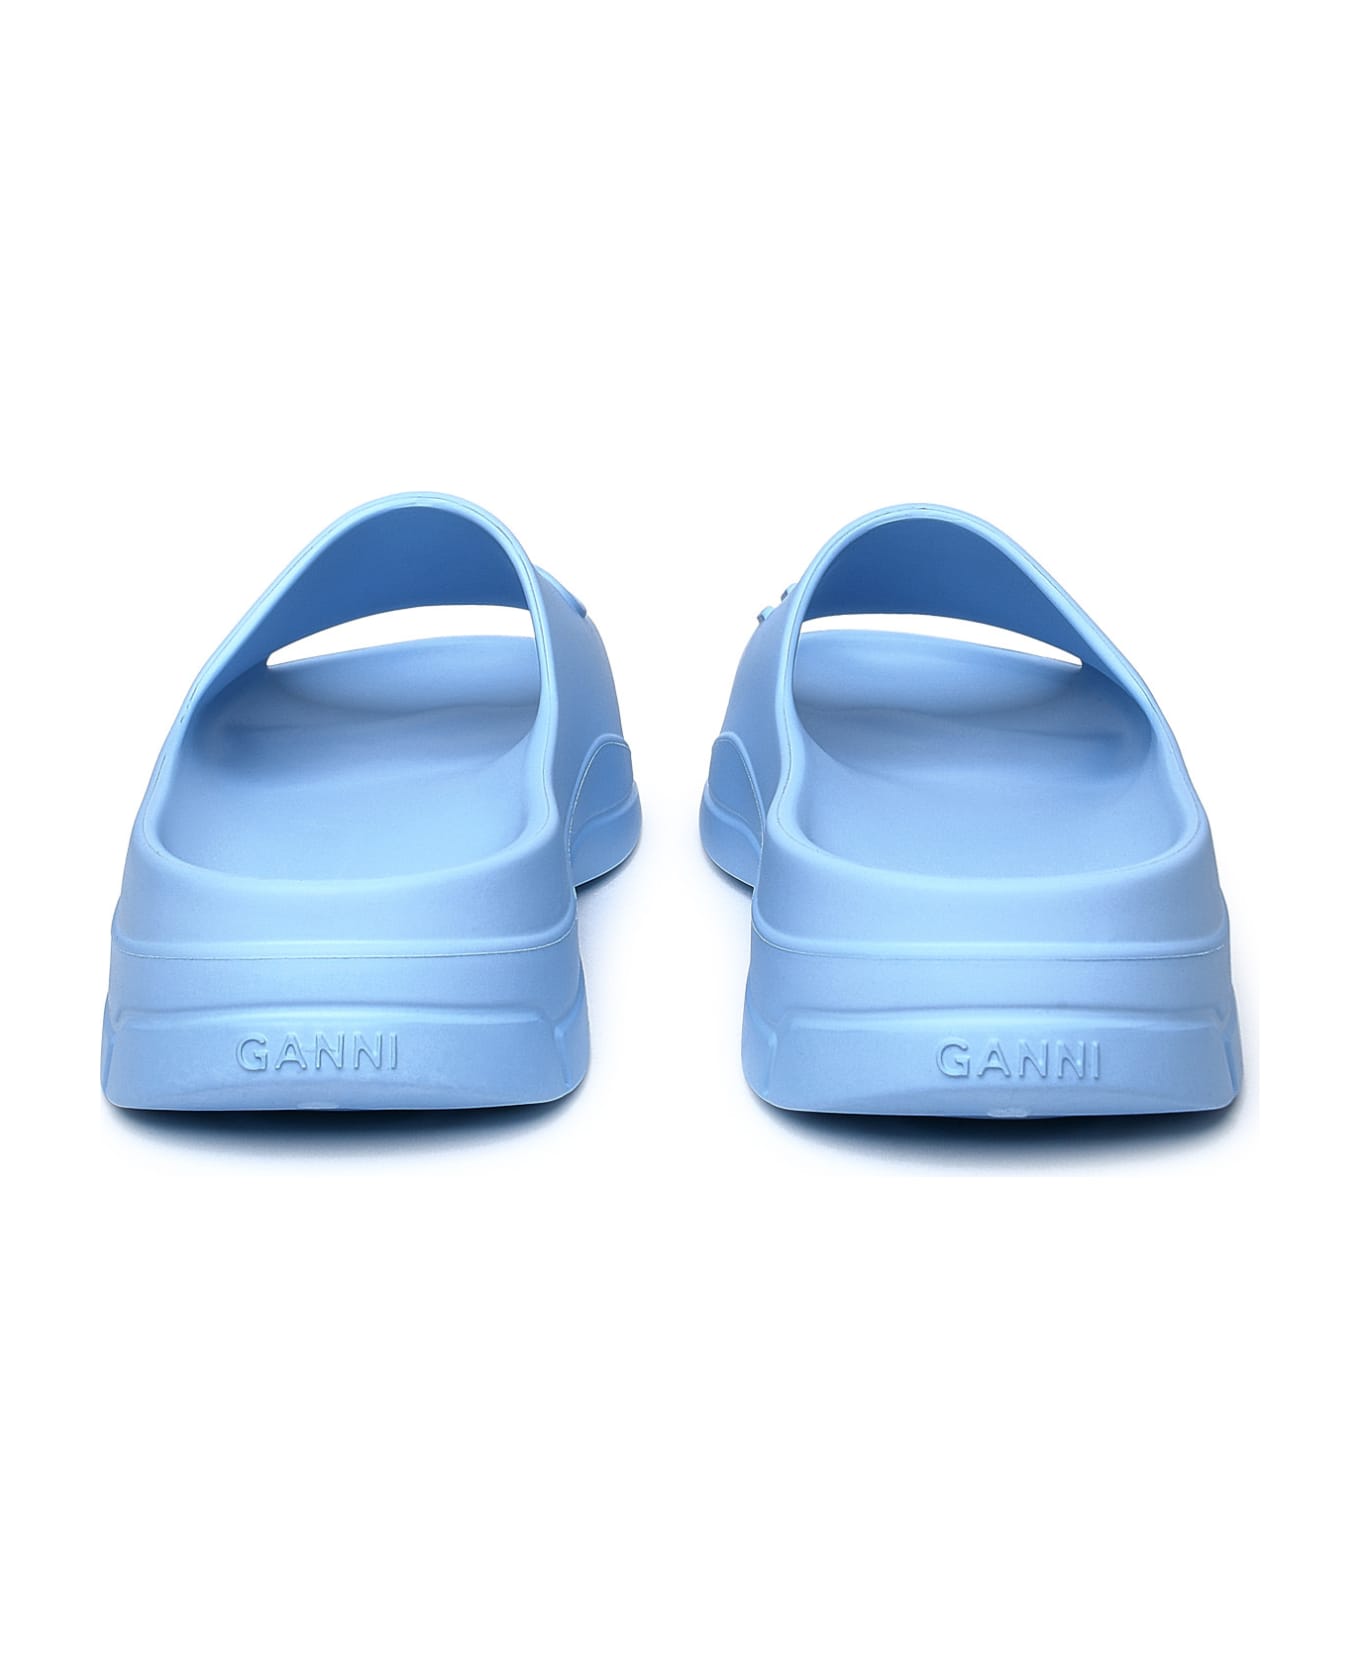 Ganni Light Blue Rubber Slippers - Light Blue